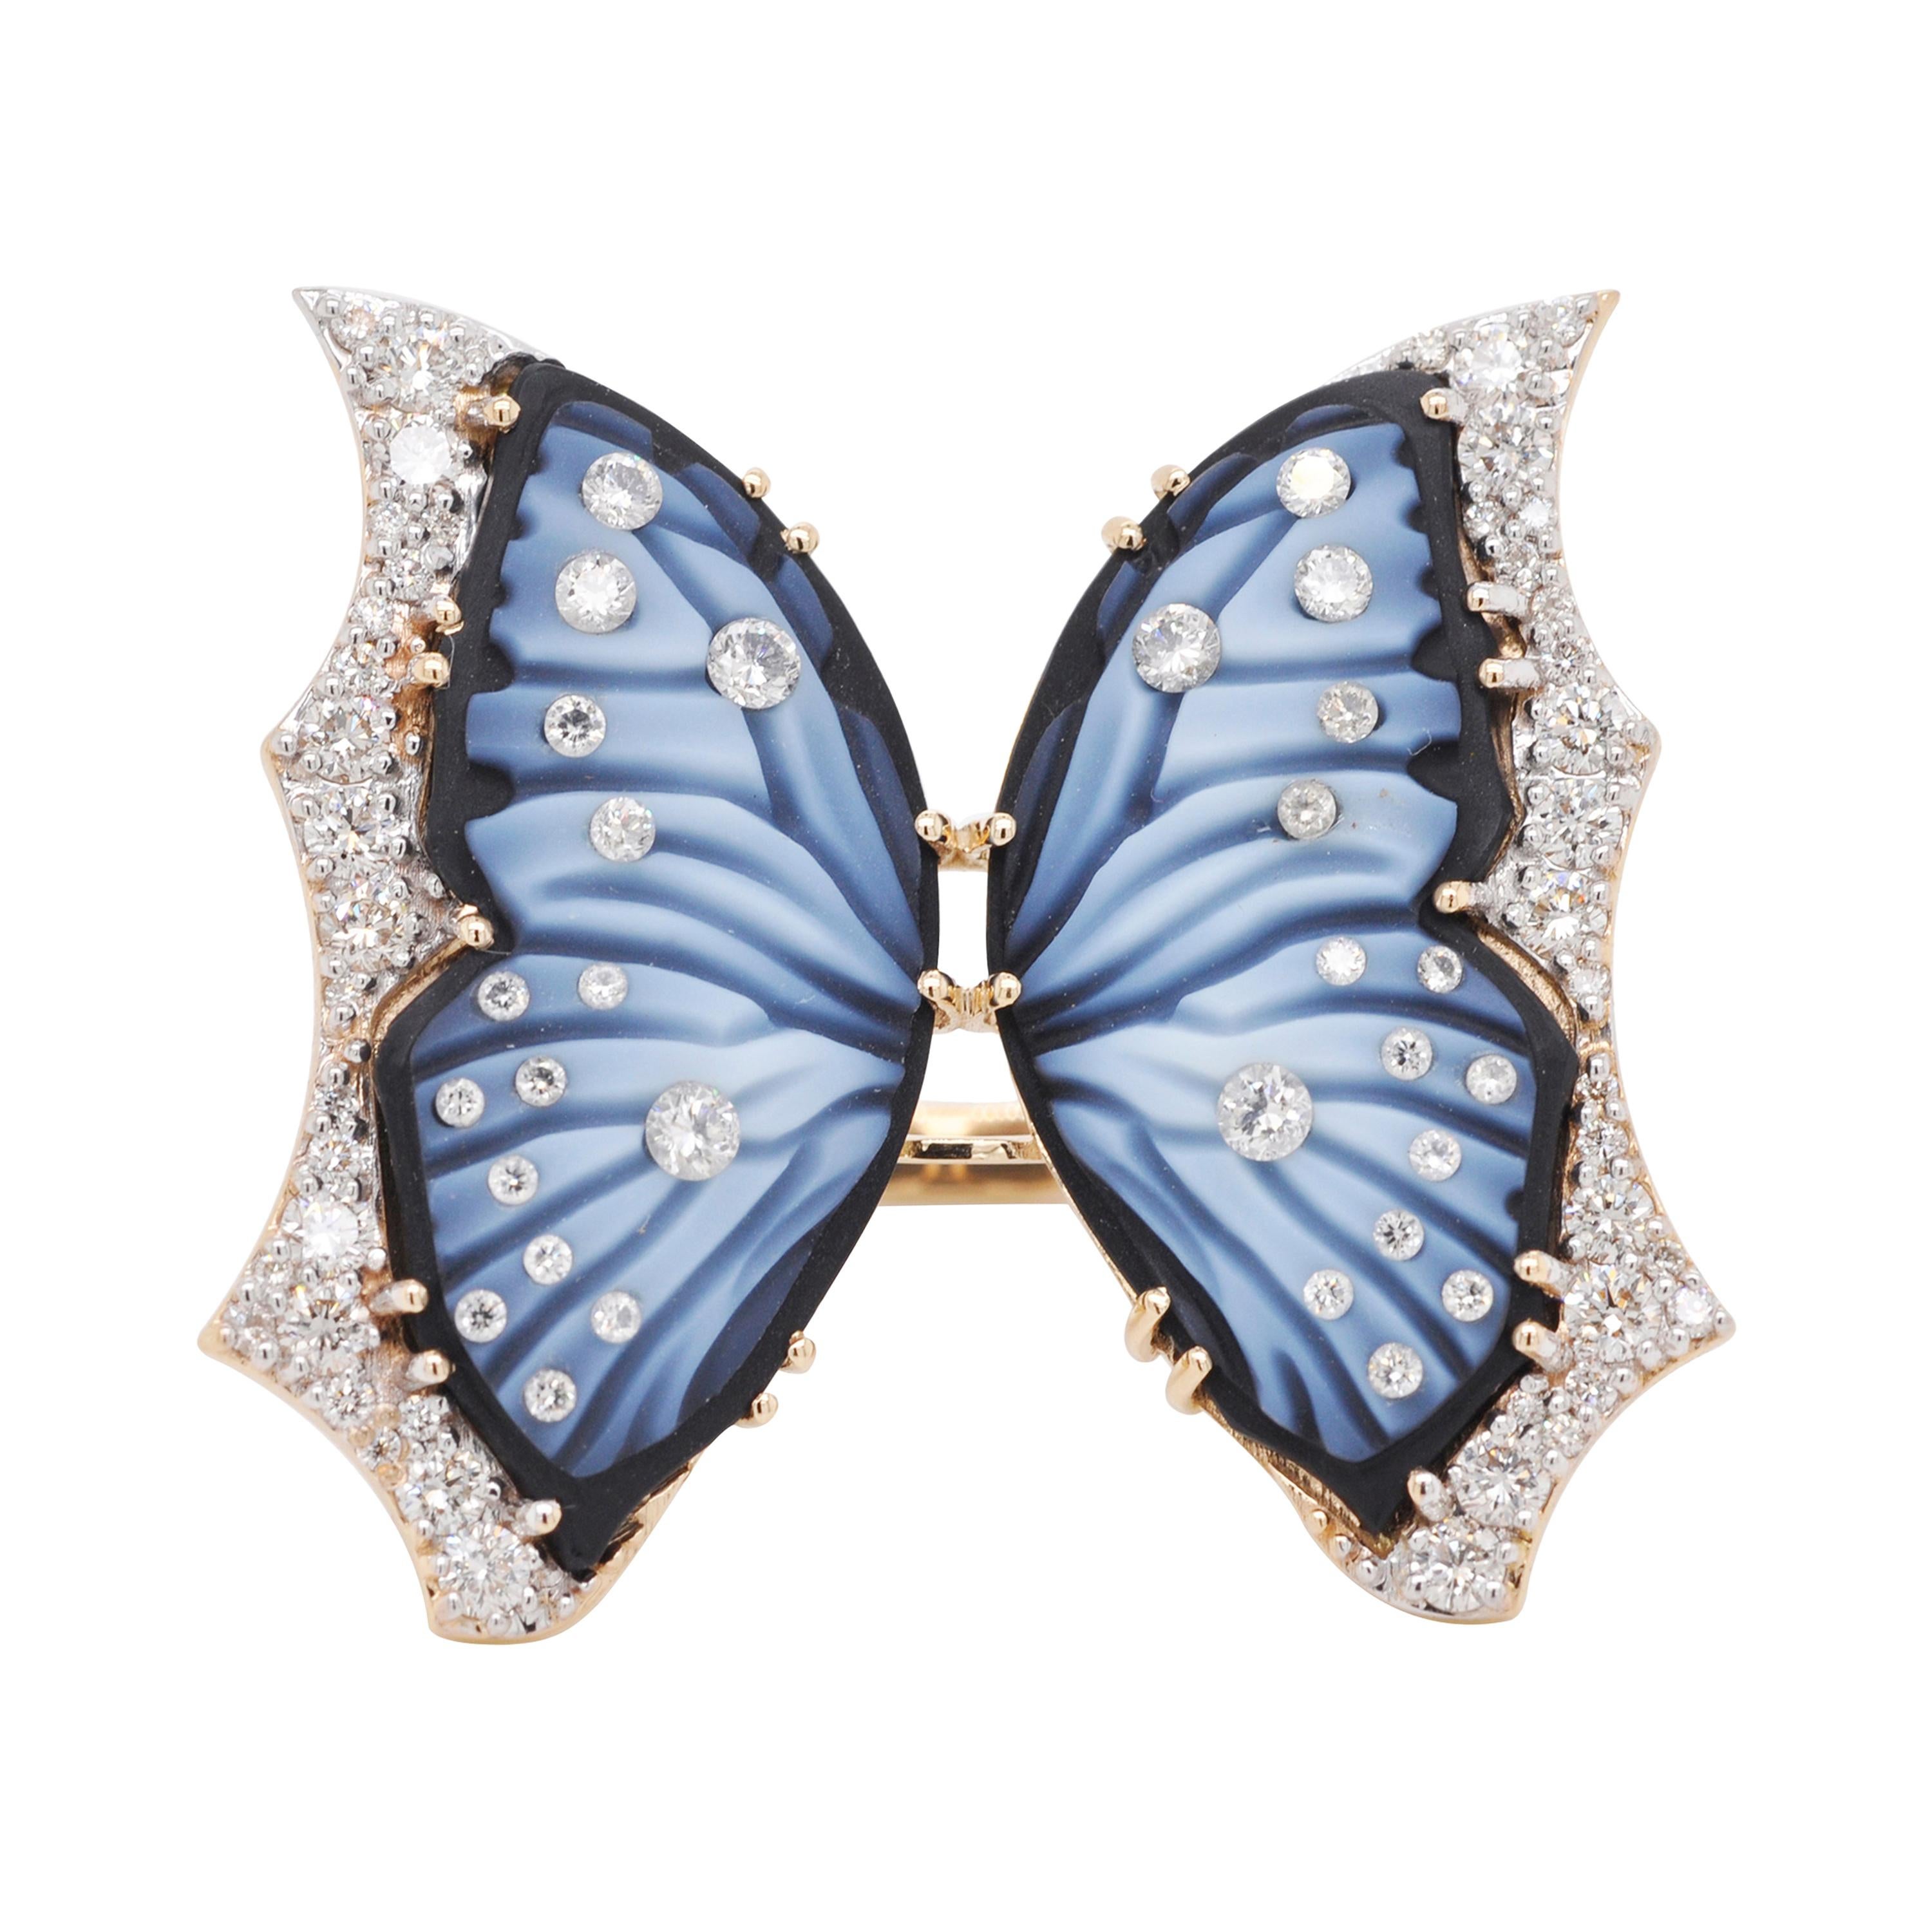 Bague de cocktail contemporaine en or 18 carats Agate papillon diamantée sculptée à la main